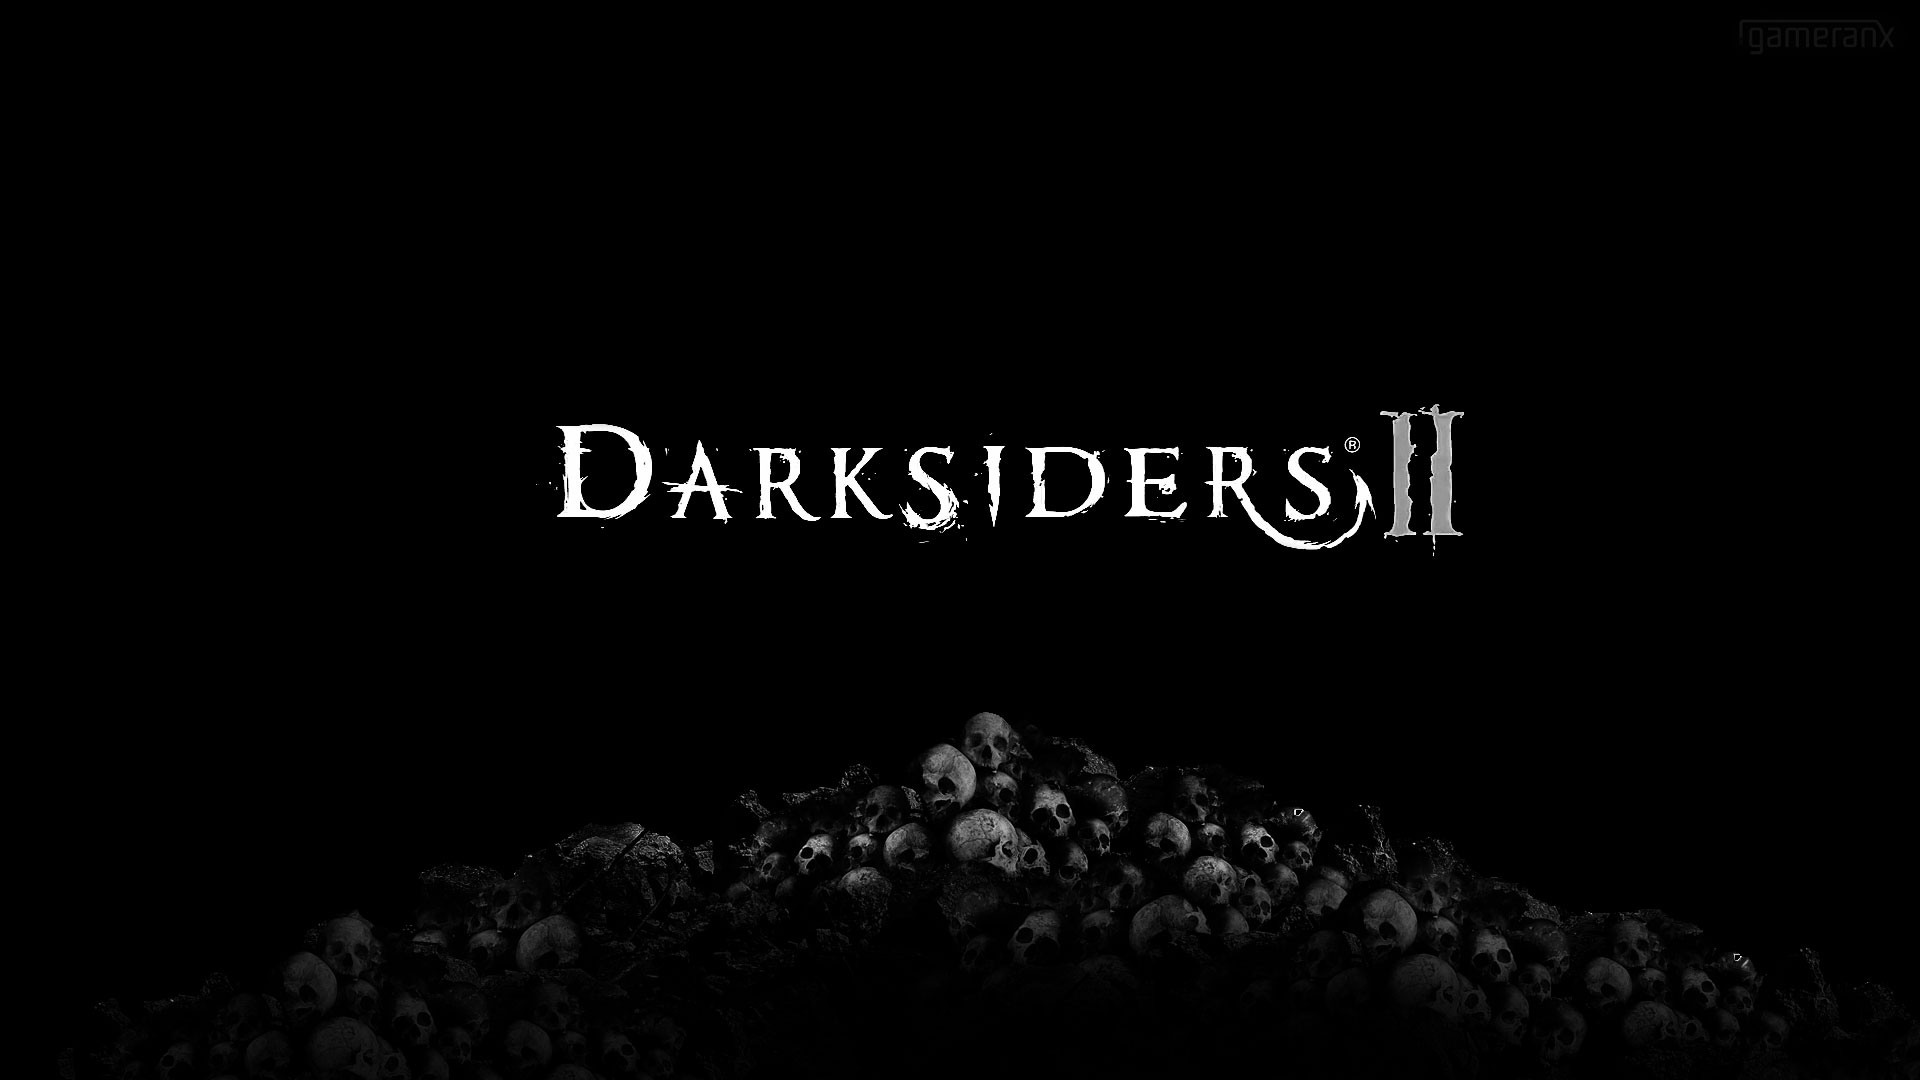 video game, darksiders ii, darksiders